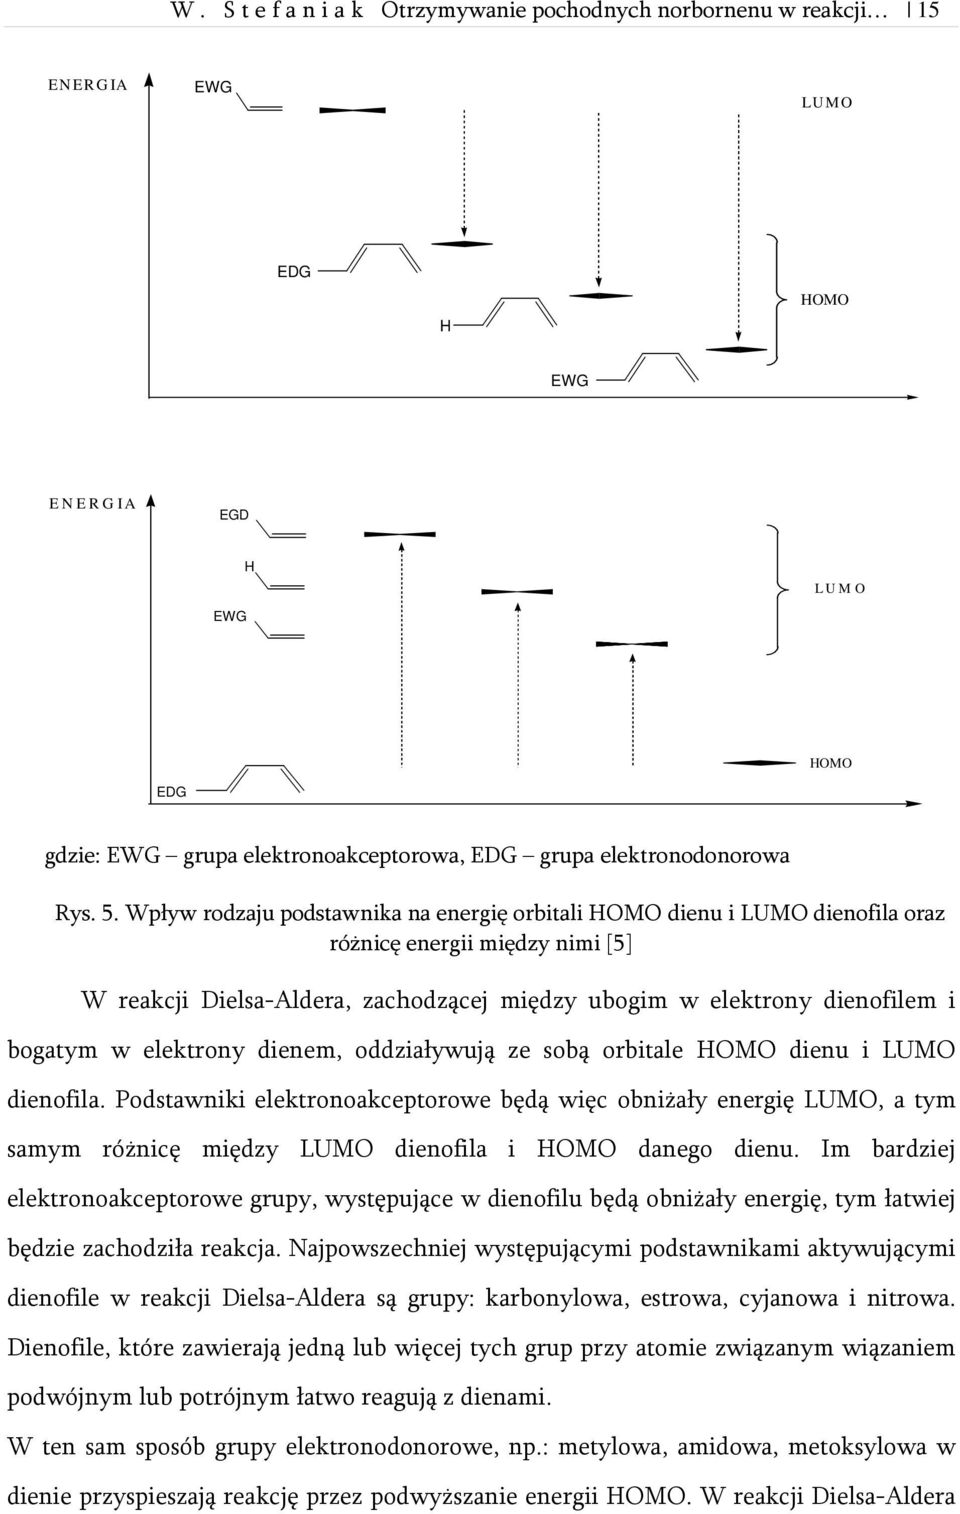 Wpływ rodzaju podstawnika na energię orbitali HOMO dienu i LUMO dienofila oraz różnicę energii między nimi [5] W reakcji Dielsa-Aldera, zachodzącej między ubogim w elektrony dienofilem i bogatym w